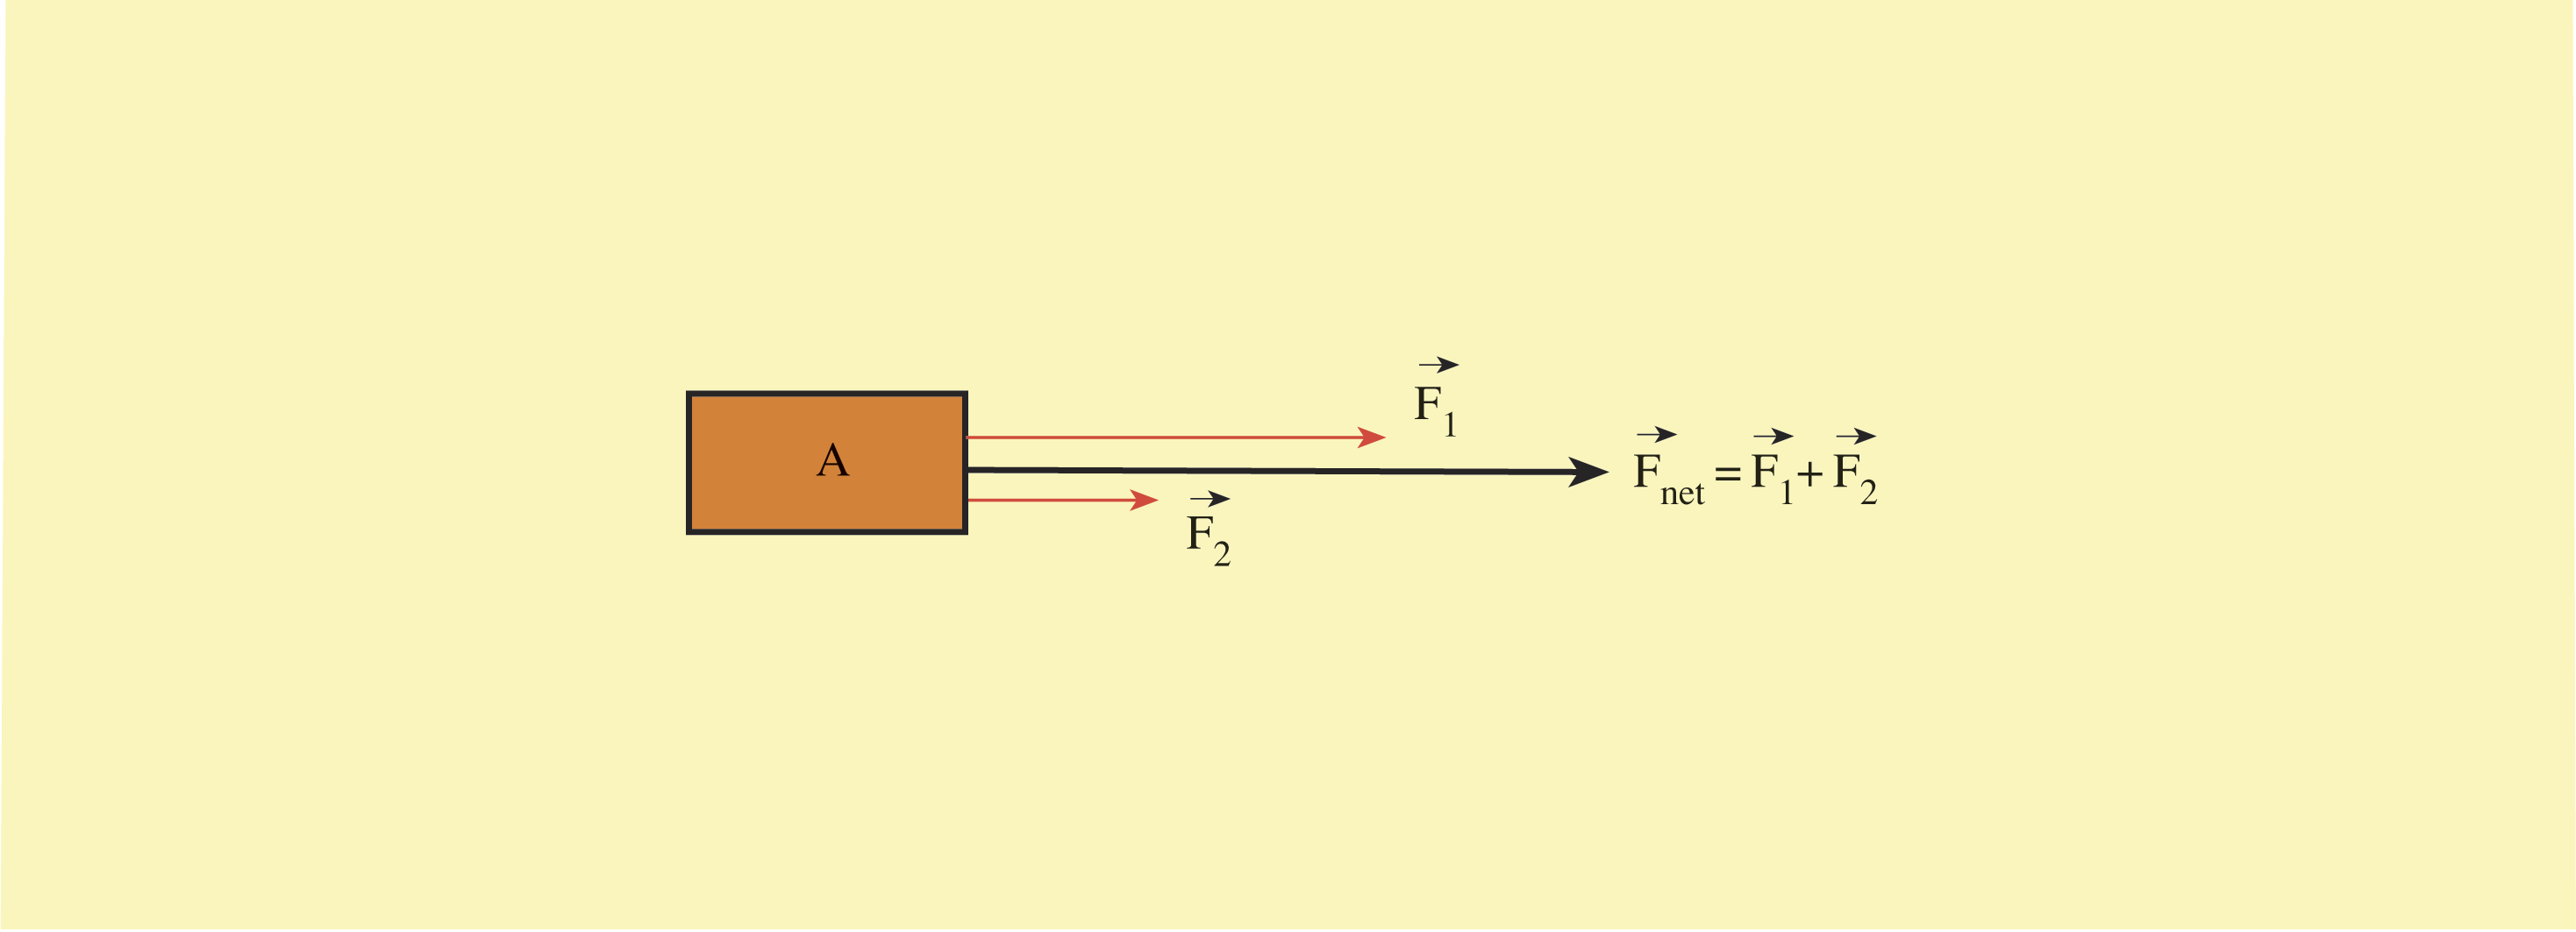 Tart flal m, Bulal m 1. ki dinamometrede okunan de erler toplam ile tek bafl na ba lanan dinamometre de eri aras nda bir iliflki var m d r? Bu durumu nas l aç klayabilirsiniz? 2.